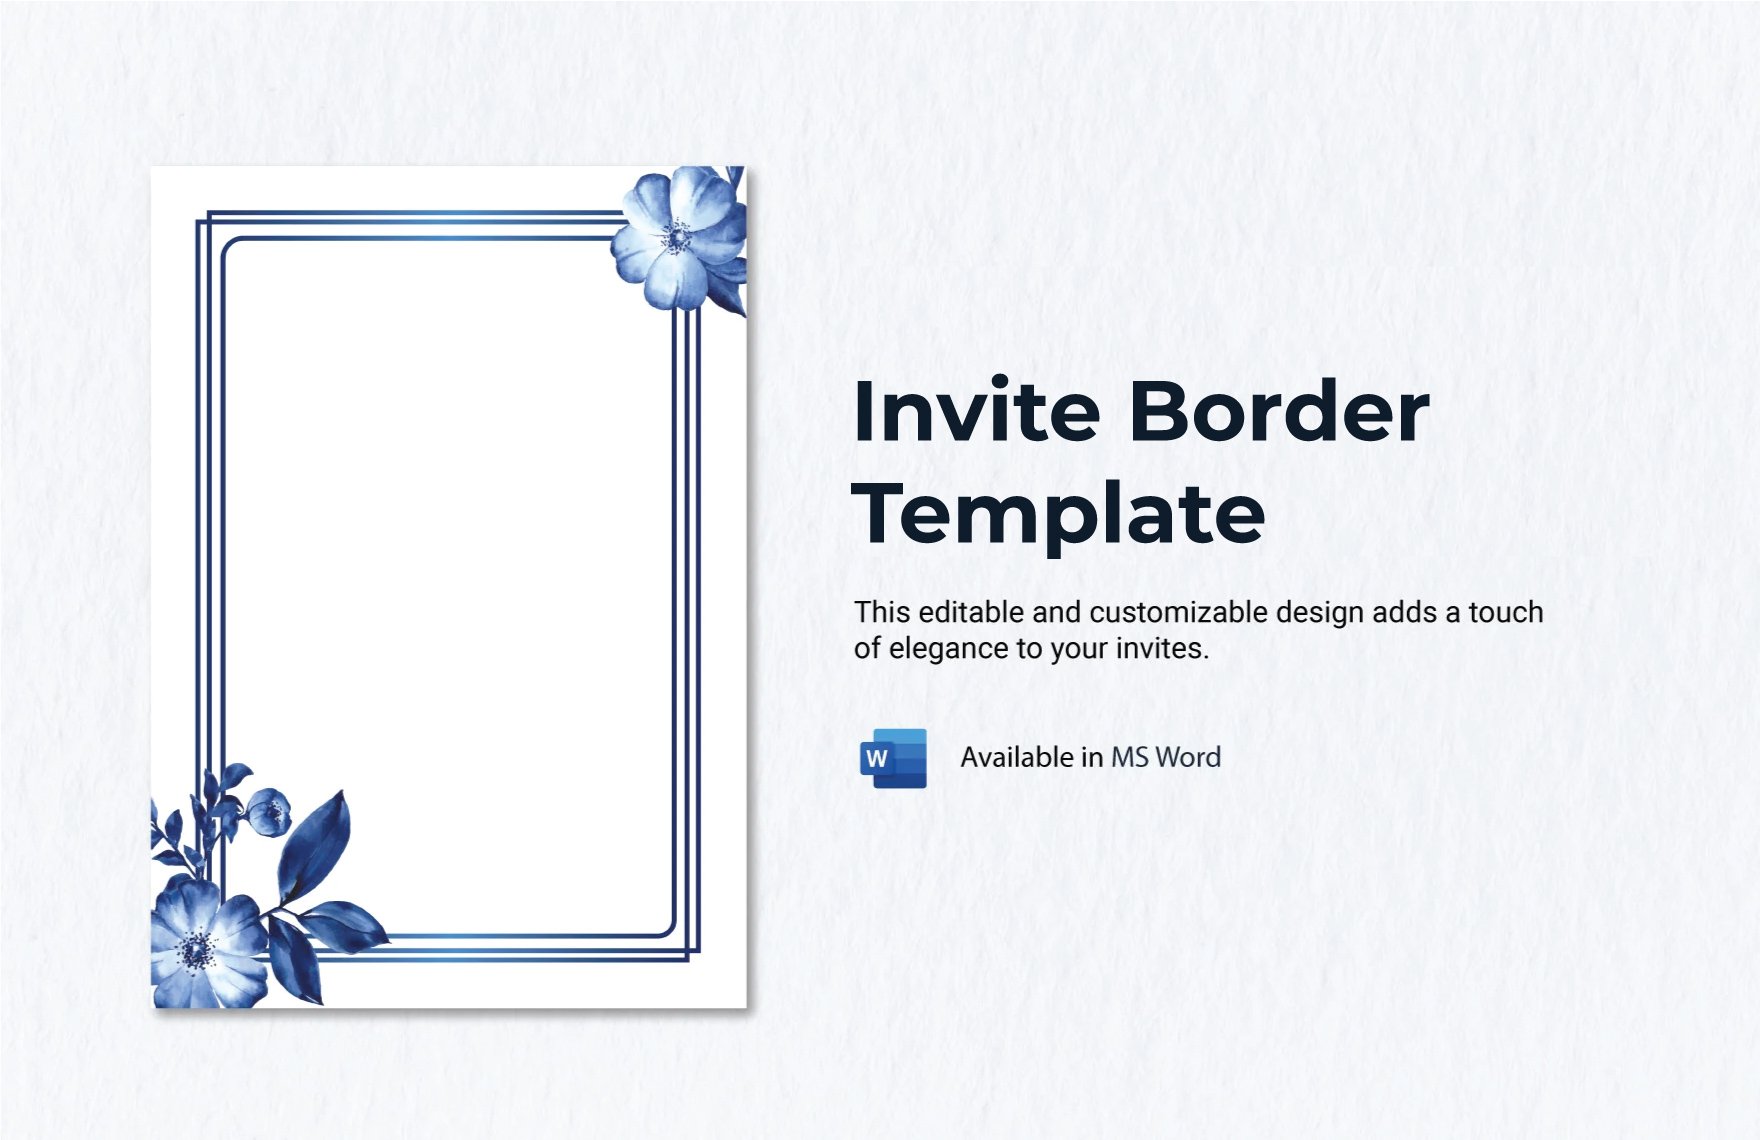 Invite Border Template